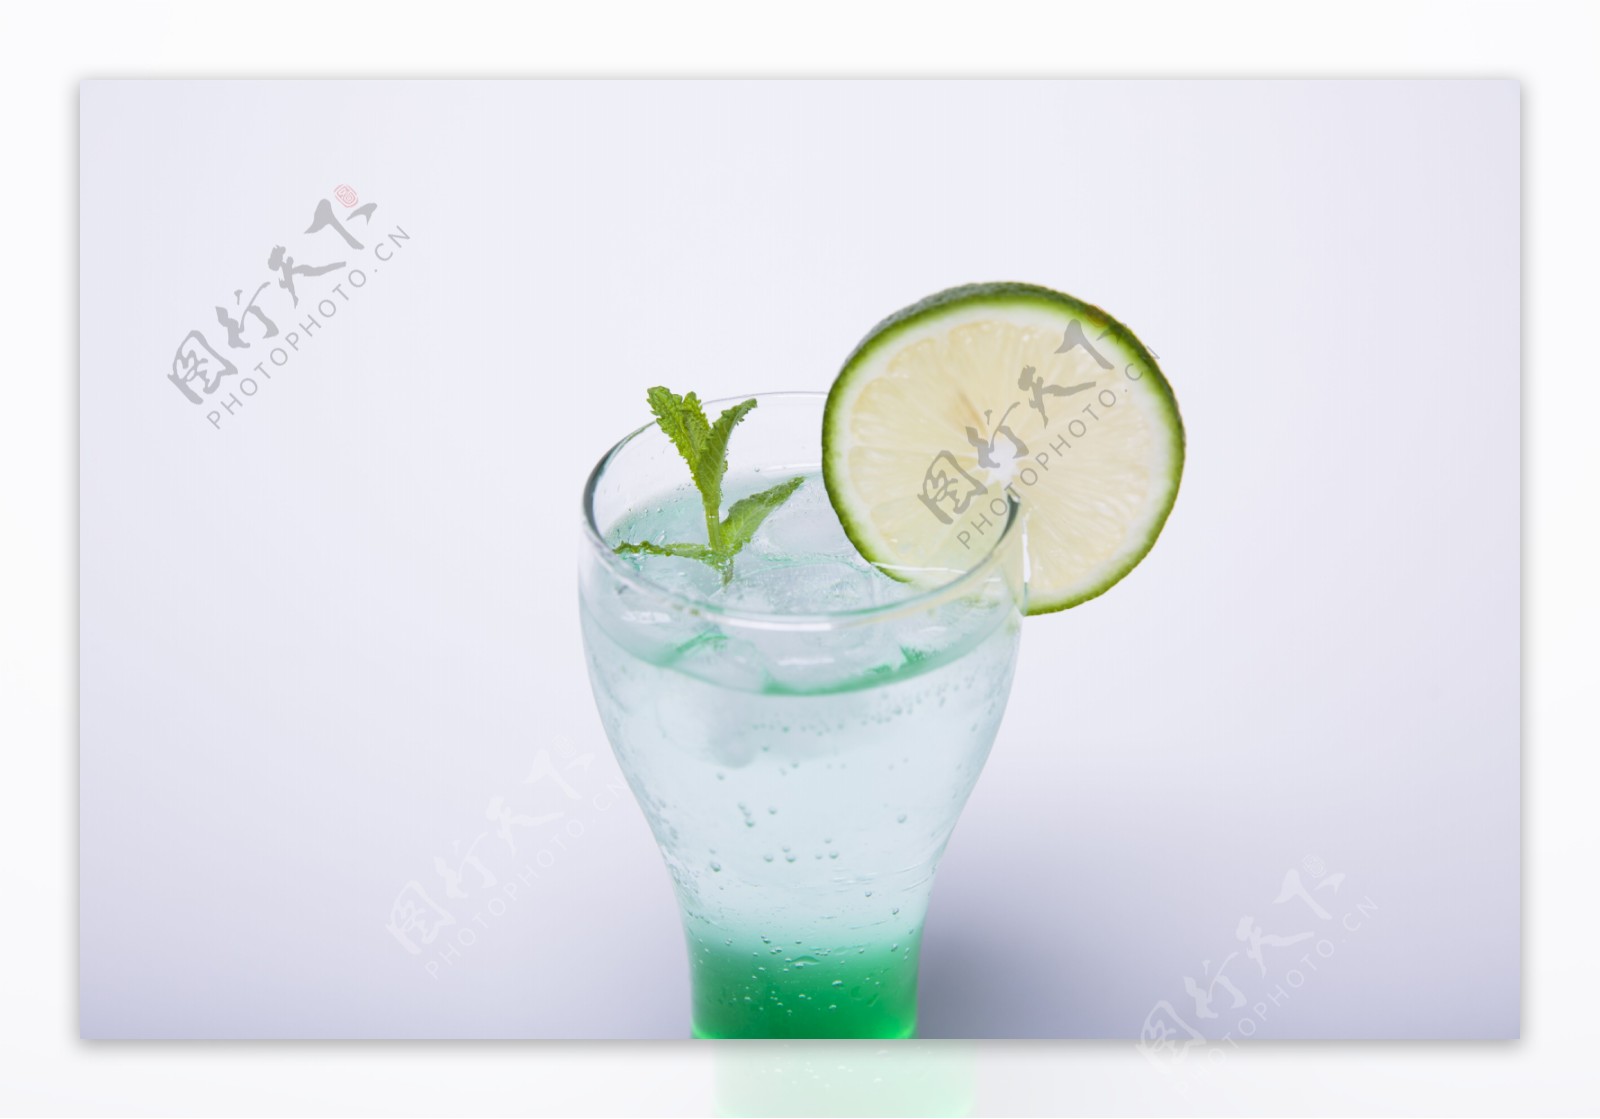 玻璃杯绿色柠檬气泡饮品